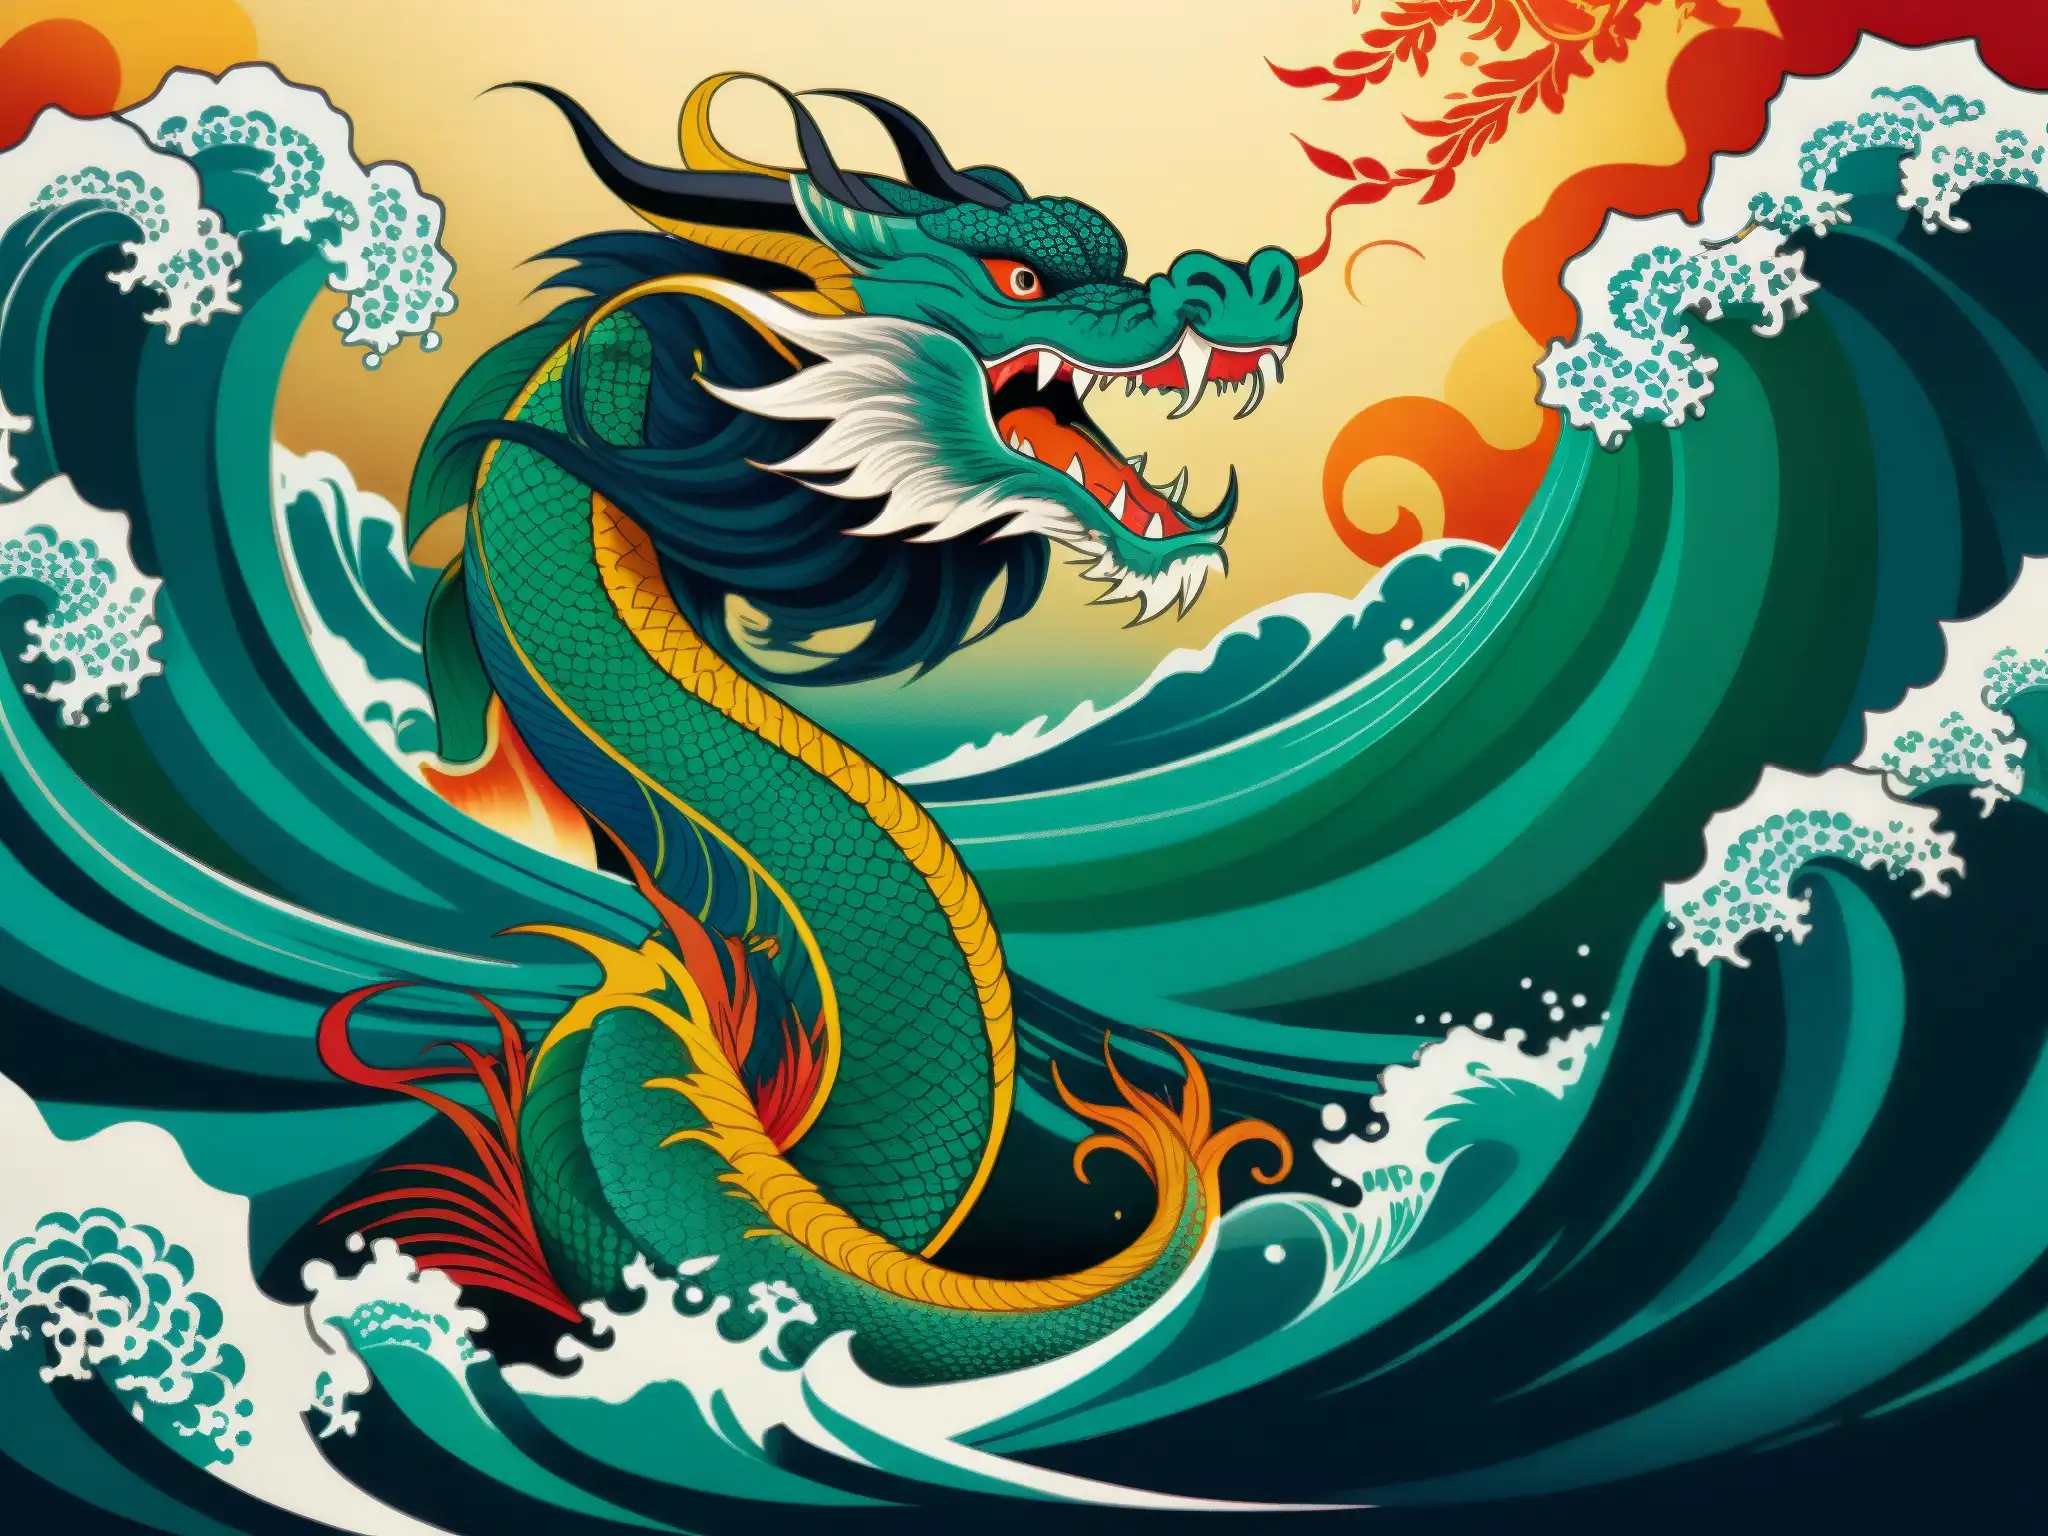 Una antigua pintura japonesa muestra un majestuoso dragón emergiendo del océano, rodeado de olas y una sirena